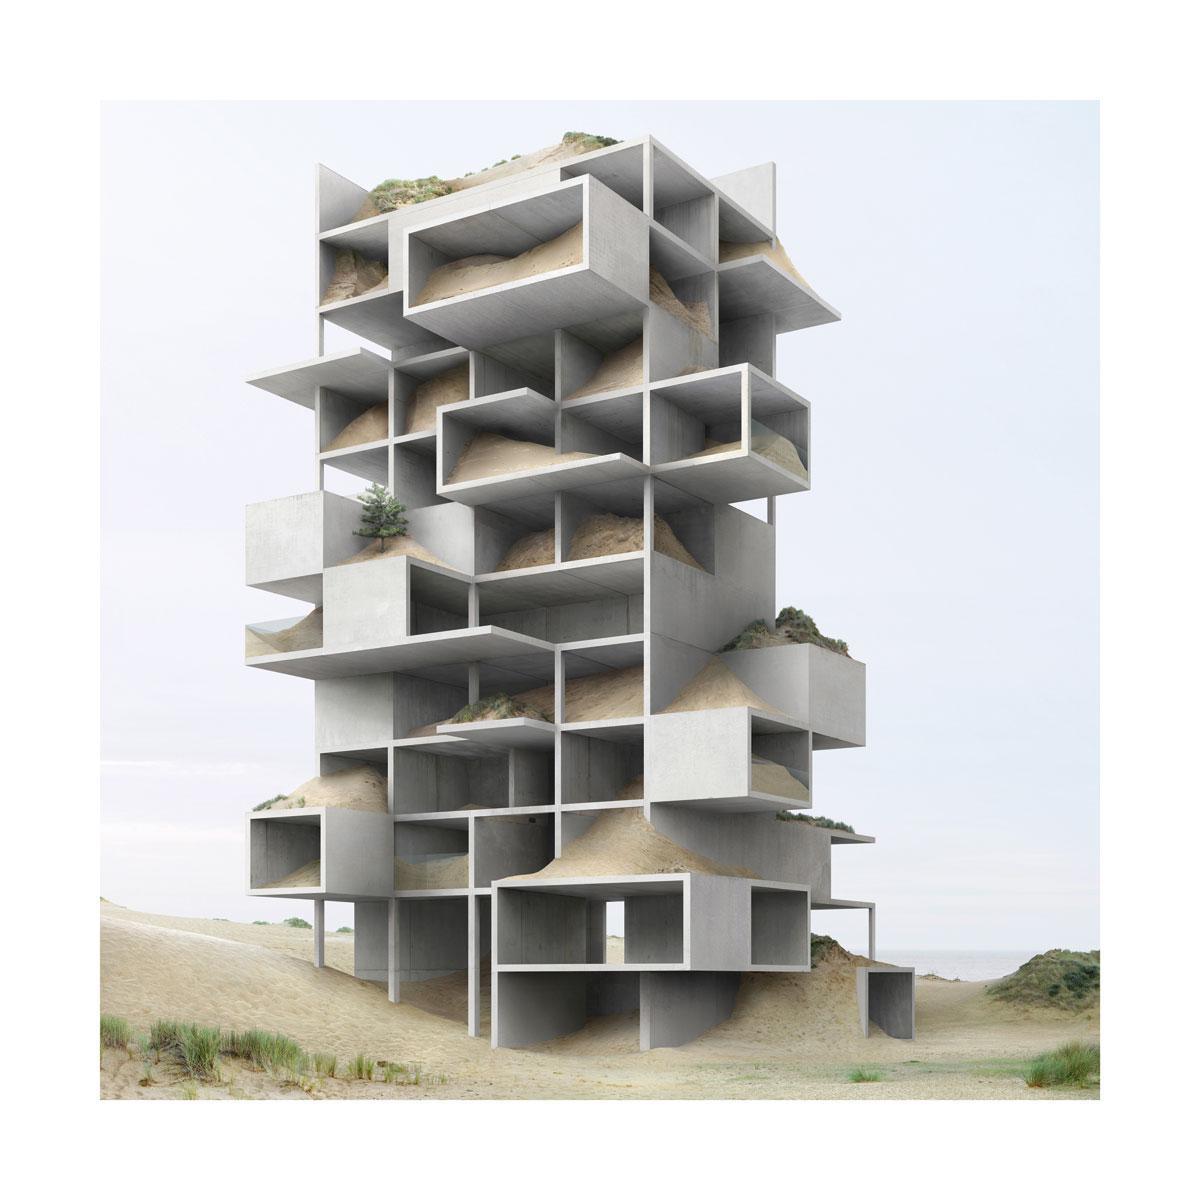 Met digitale technieken ontwerpt Filip Dujardin architecturale sculpturen, waarbij hij zich hier door Oostende liet inspireren.